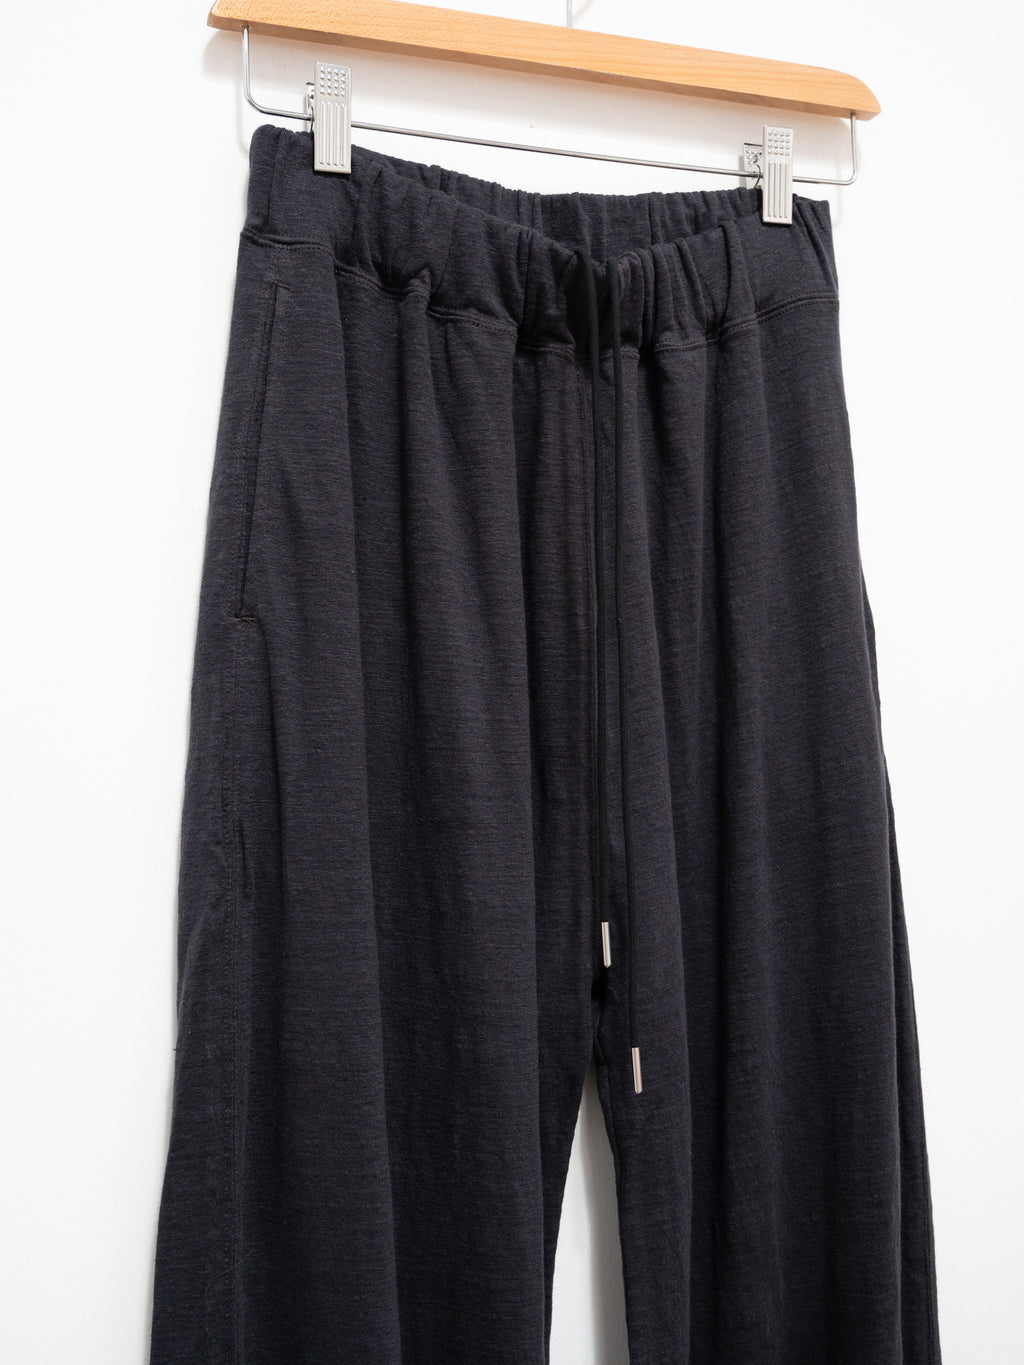 Namu Shop - Unfil French Linen Jersey Wide Leg Pants - Charcoal Black